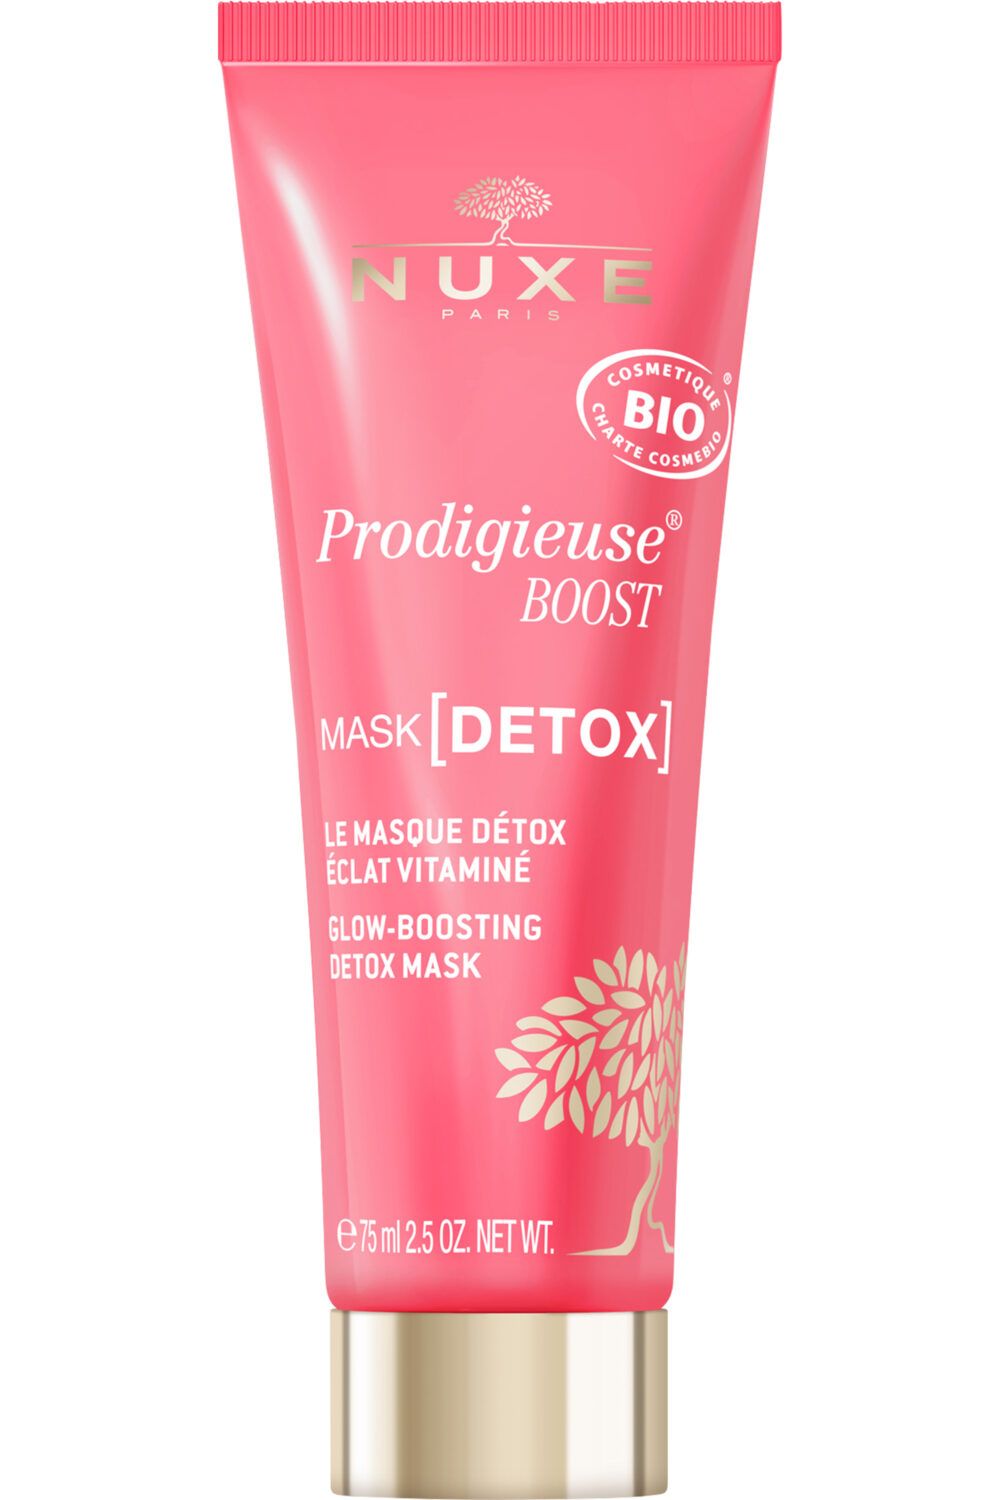 Nuxe - Masque détox éclat vitaminé Prodigieuse BOOST®